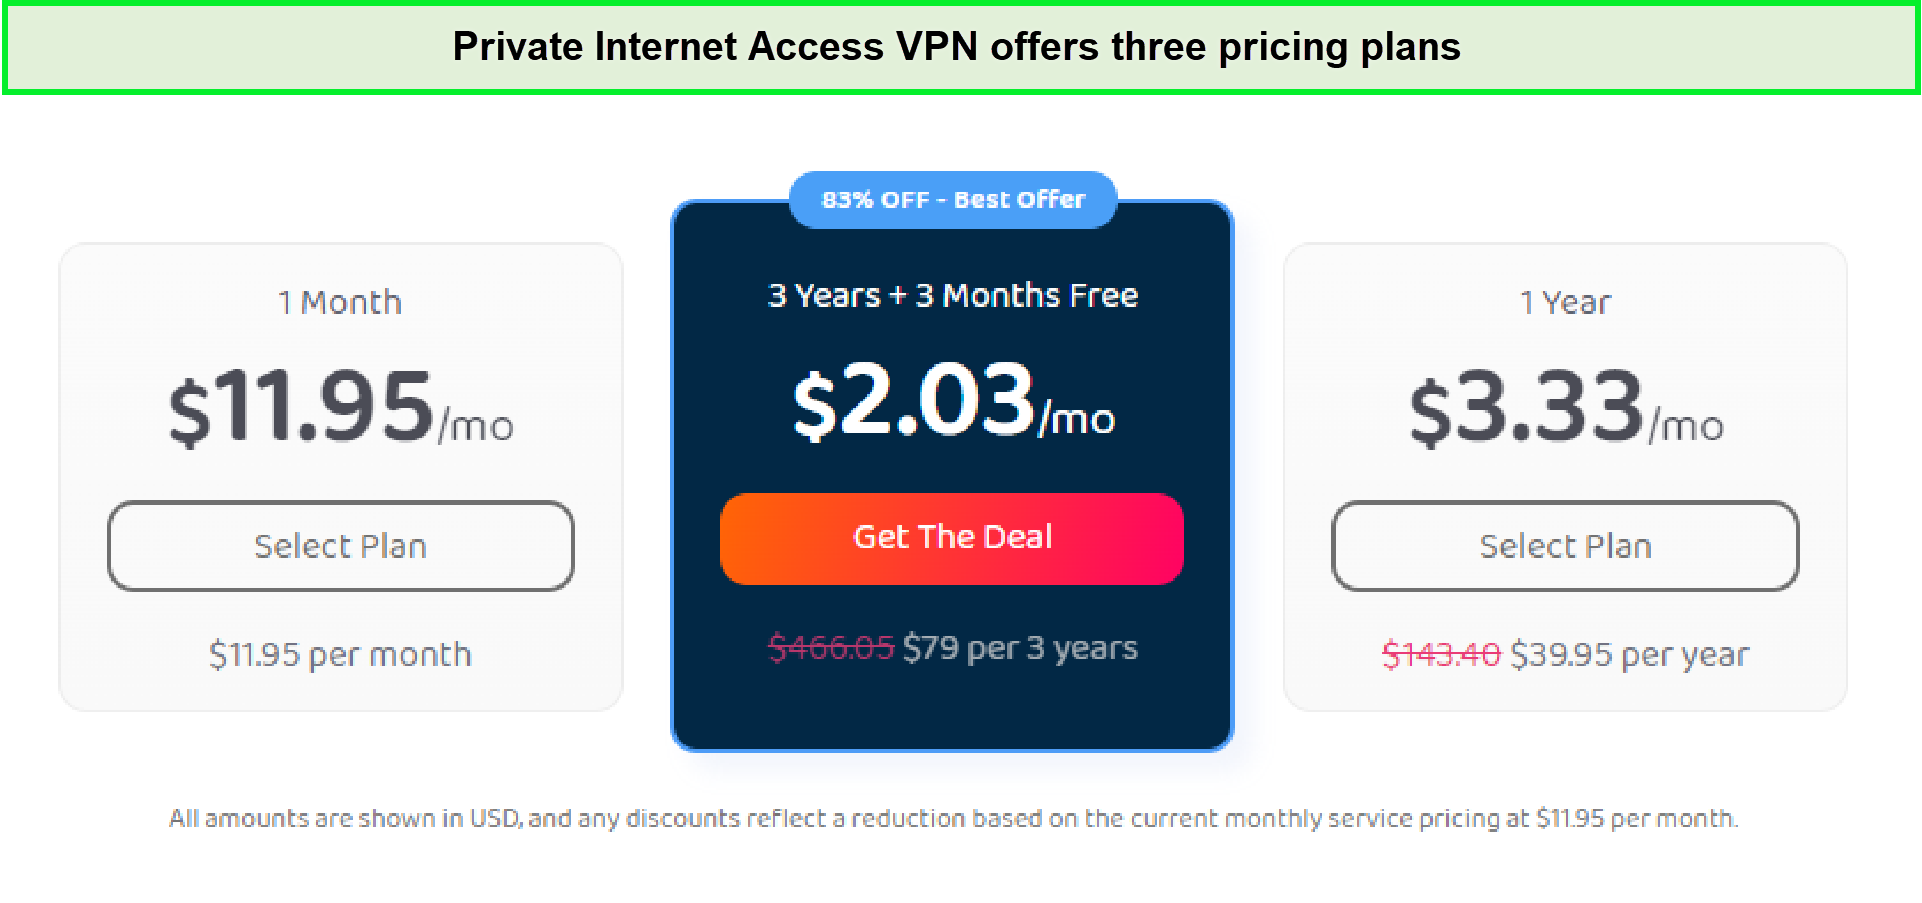  Pia-VPN-prijsplannen in - Nederland 